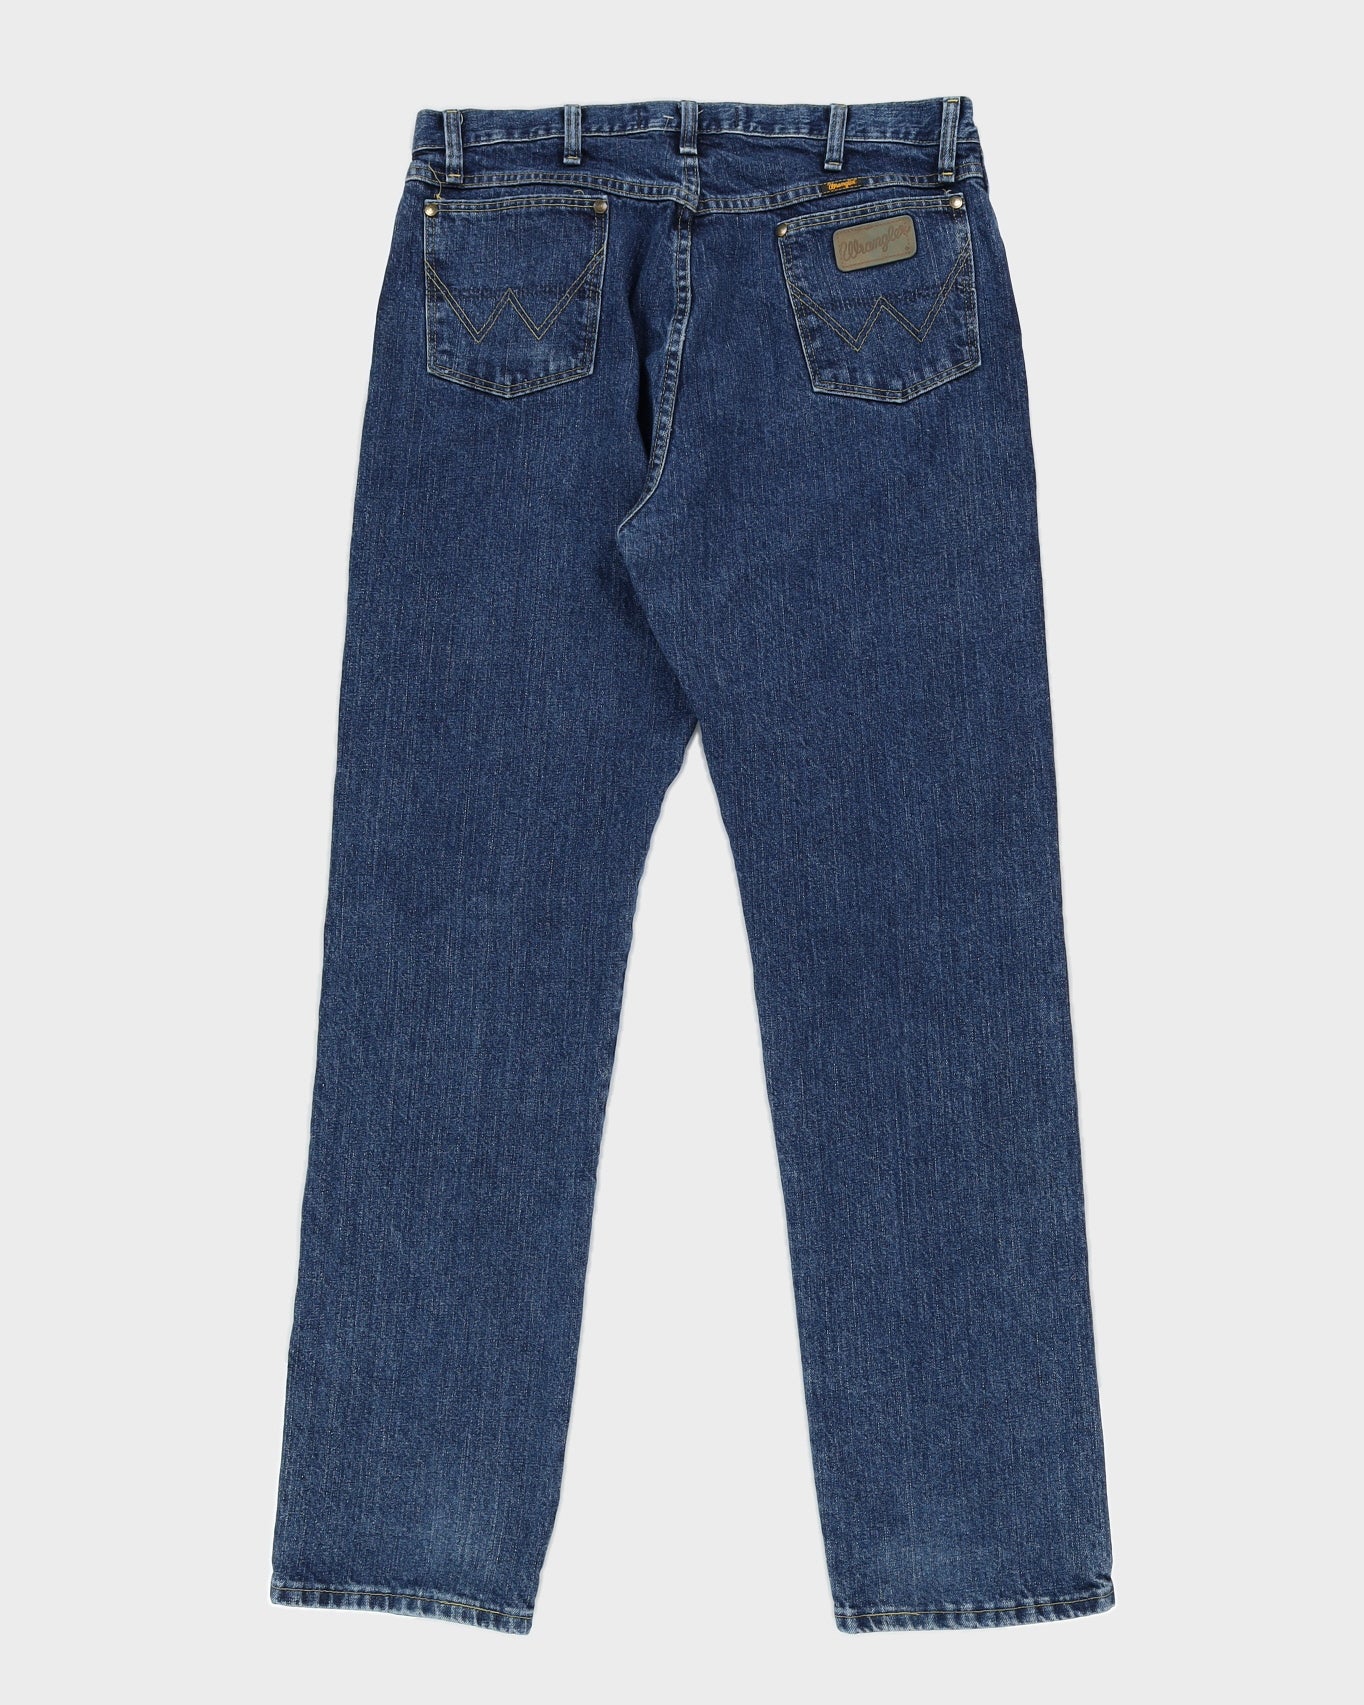 Vintage 90s Wrangler Dark Wash Jeans - W36 L36